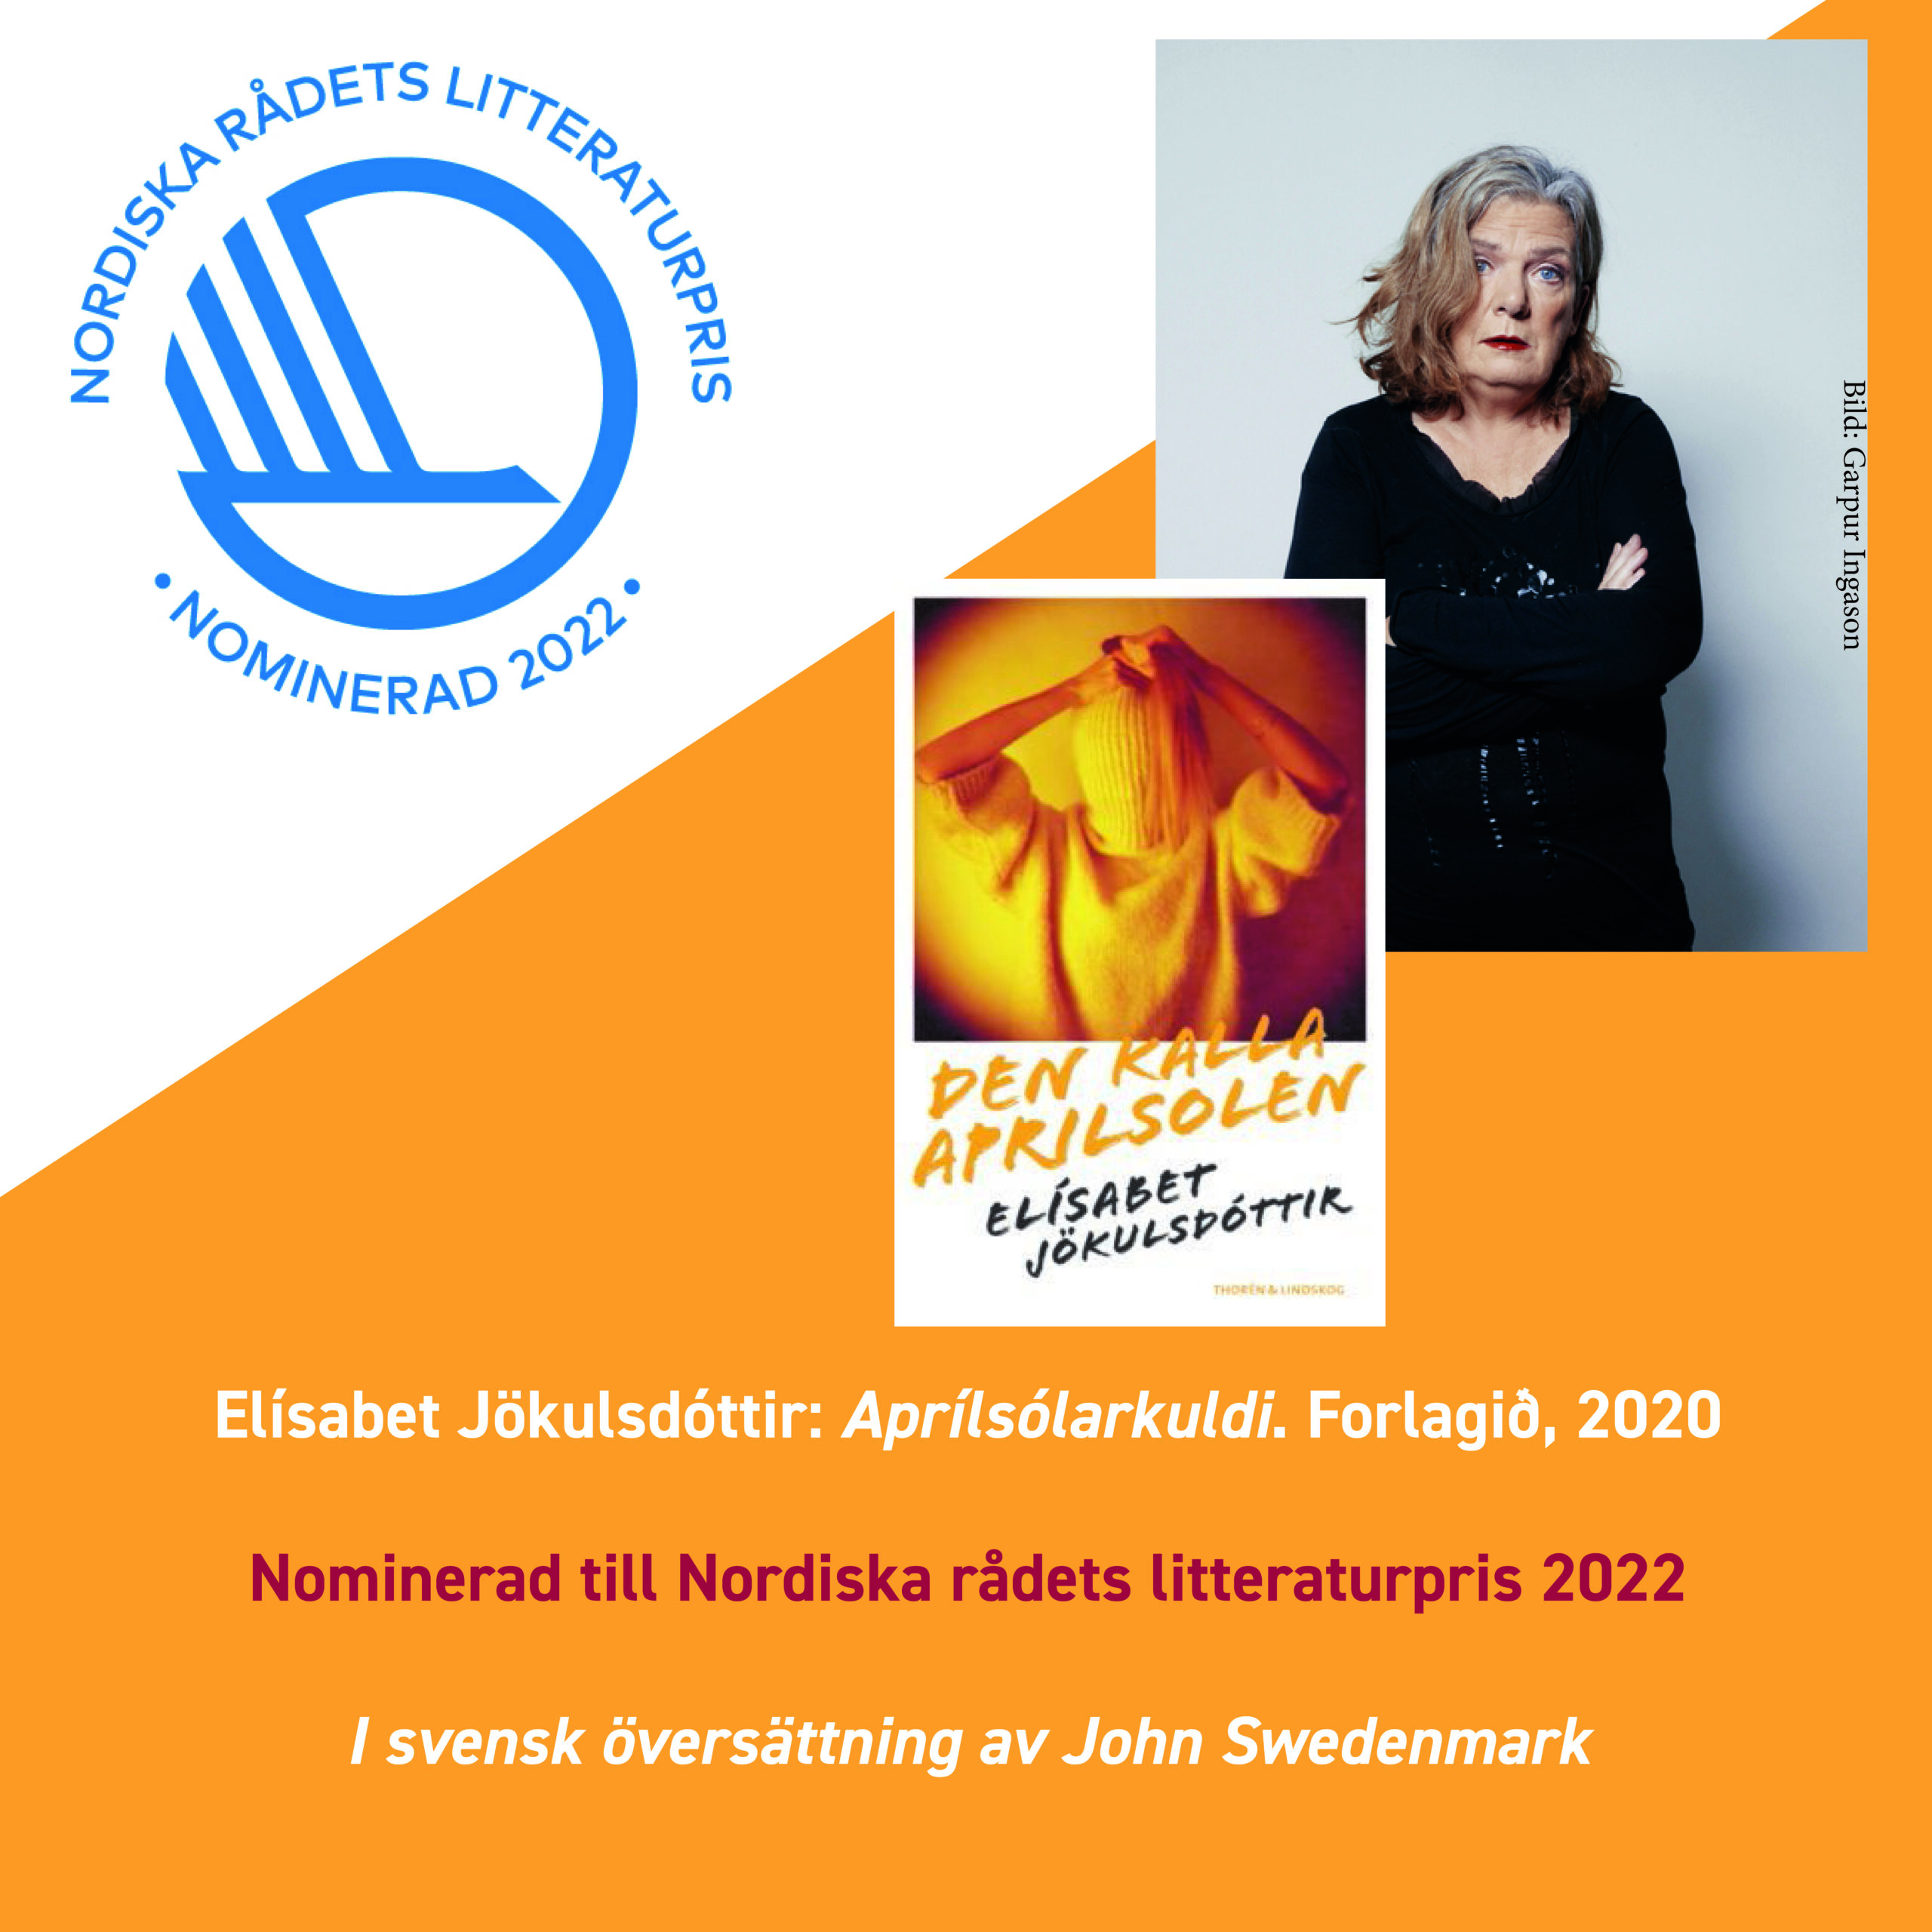 Elísabet Jökulsdóttir nominerad till Nordiska rådets litteraturpris 2022!